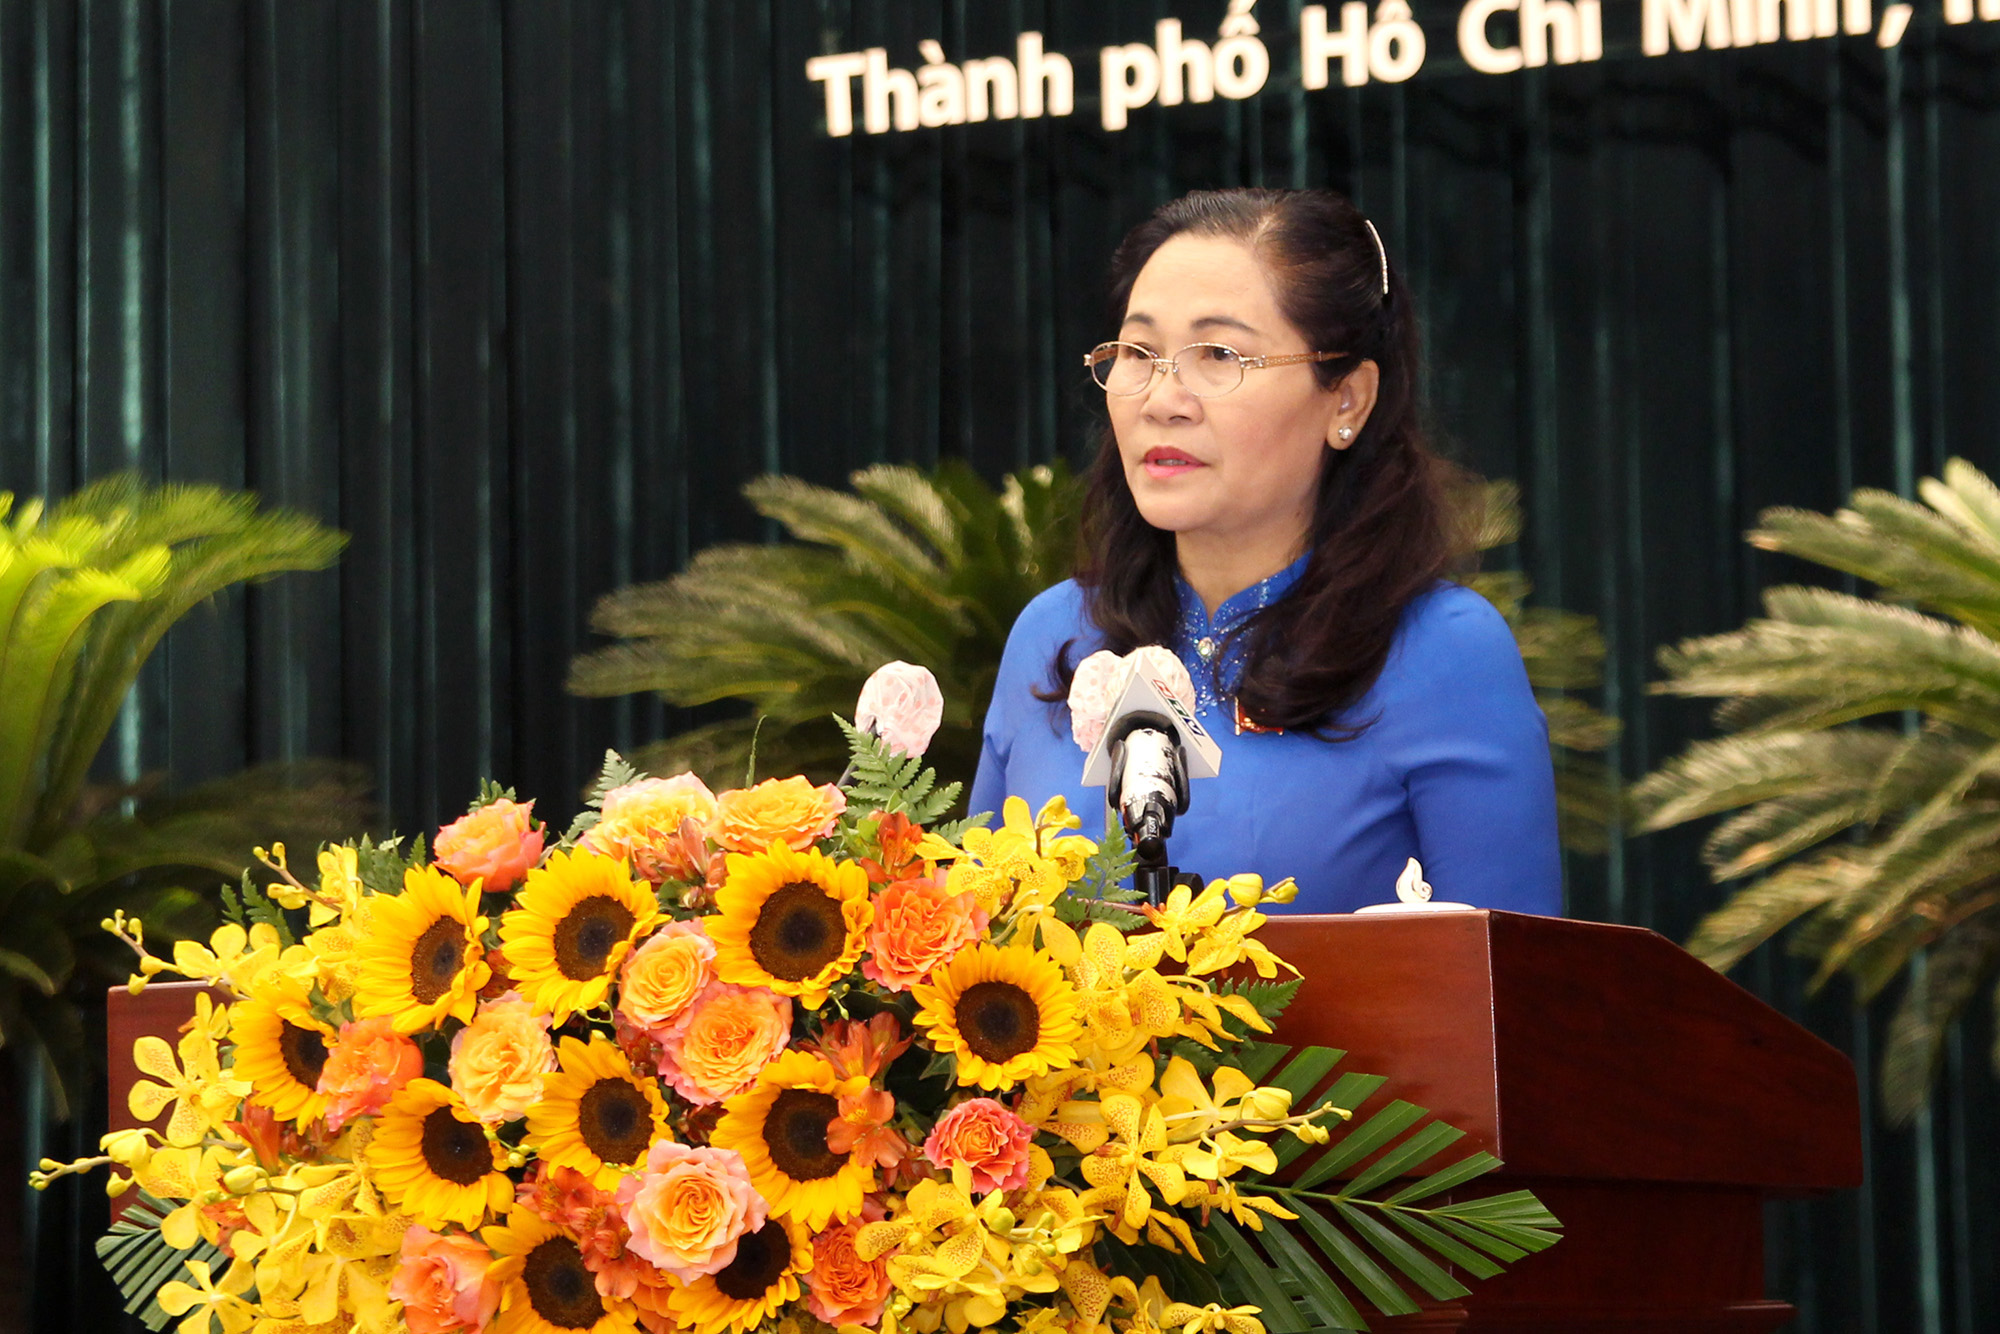 Phó Bí thư Thành ủy, Chủ tịch HĐND TP. Hồ Chí Minh Nguyễn Thị Lệ, phát biểu tại kỳ họp (Ảnh: H.Hào).